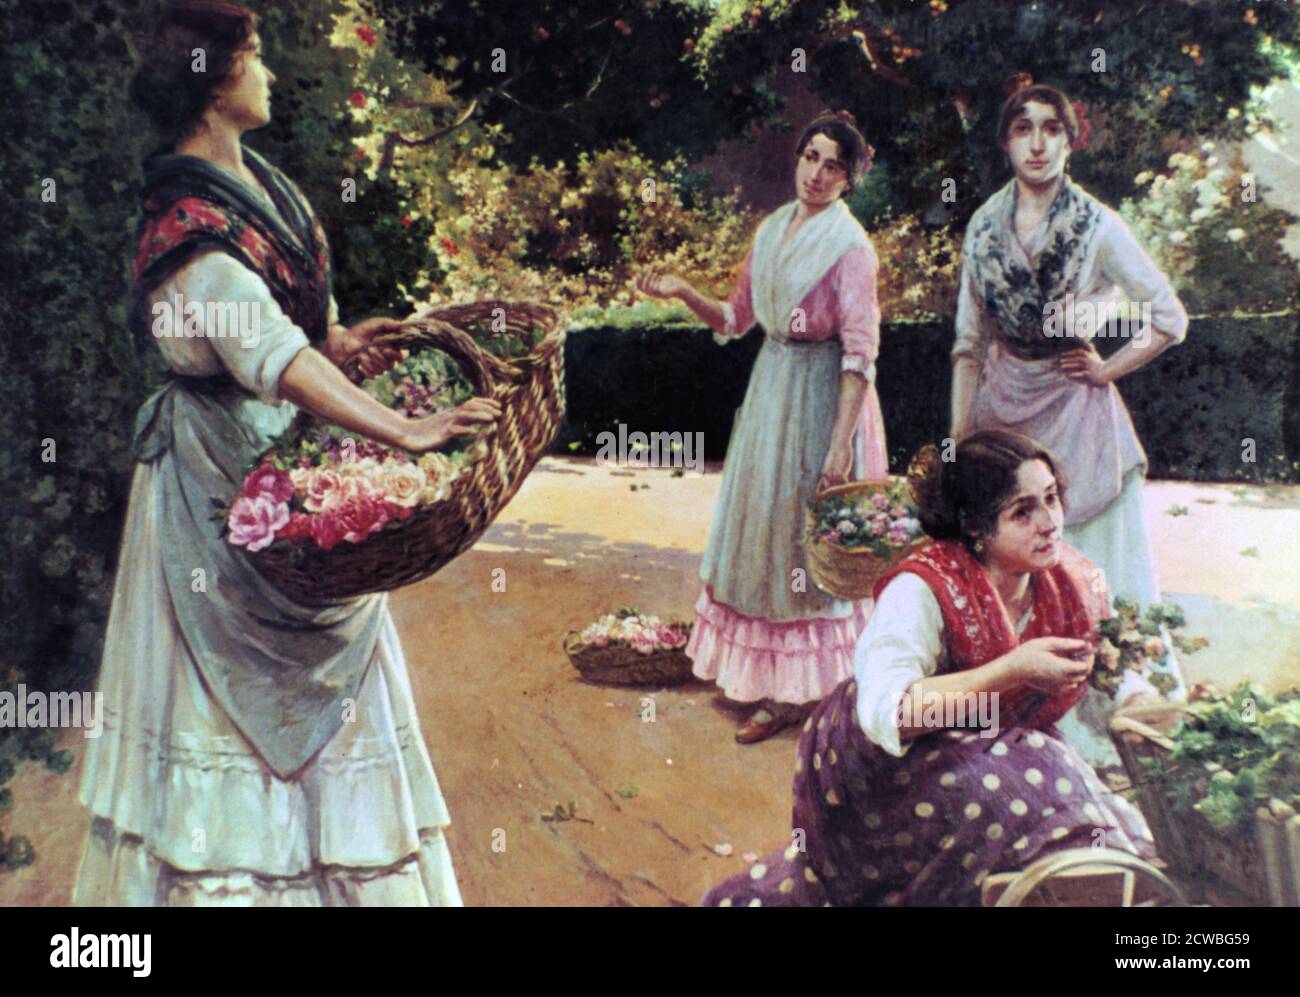 Flower Sellers of Sevilla' von Jose rico tejedo. Aus dem Museum der Schönen Künste von Sevilla, Spanien. Stockfoto